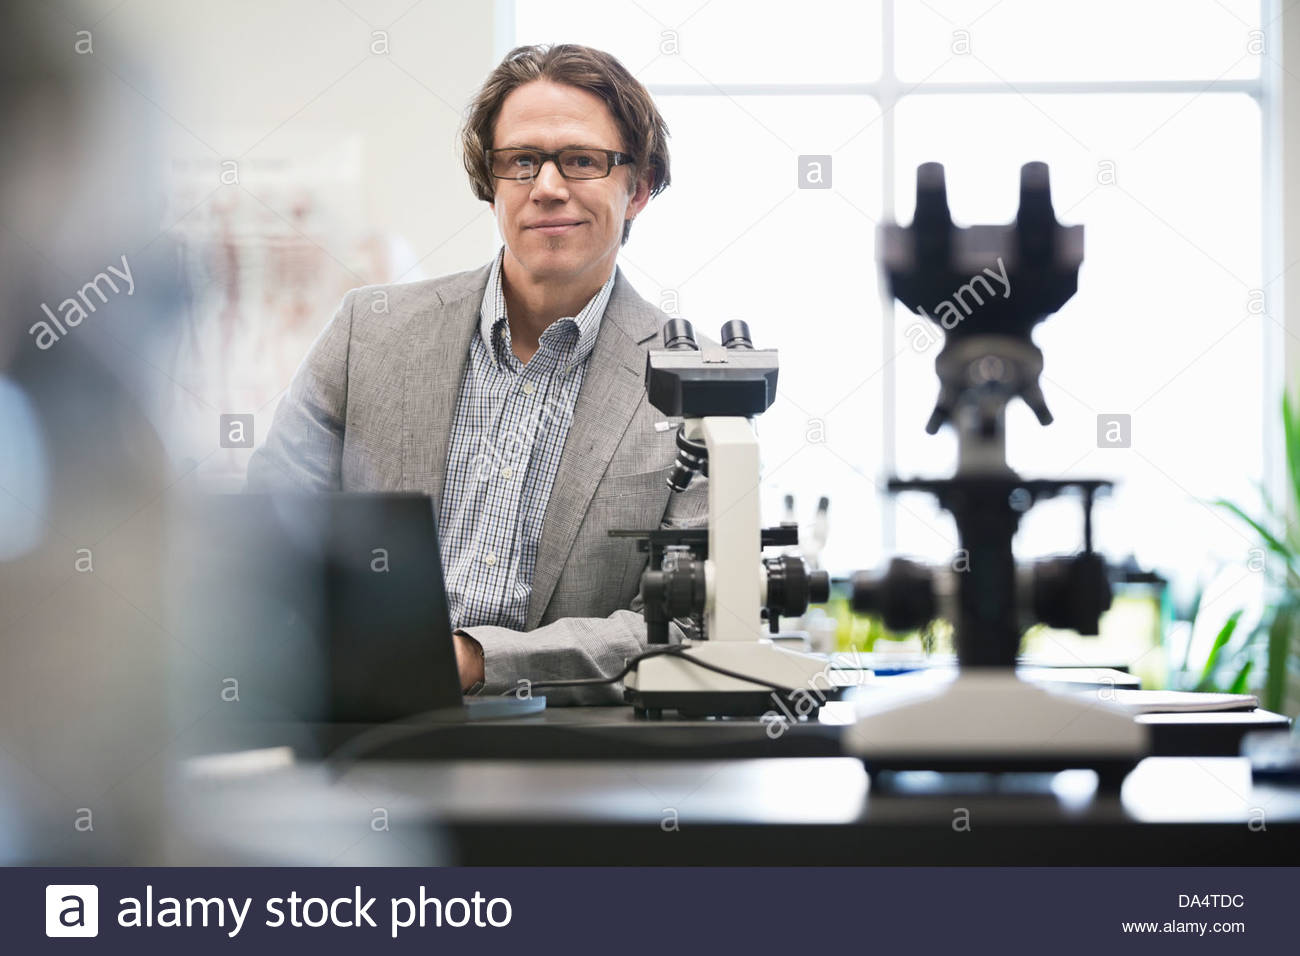 Portrait de l'homme professeur de collège s'appuyant sur le tableau dans la science lab Banque D'Images